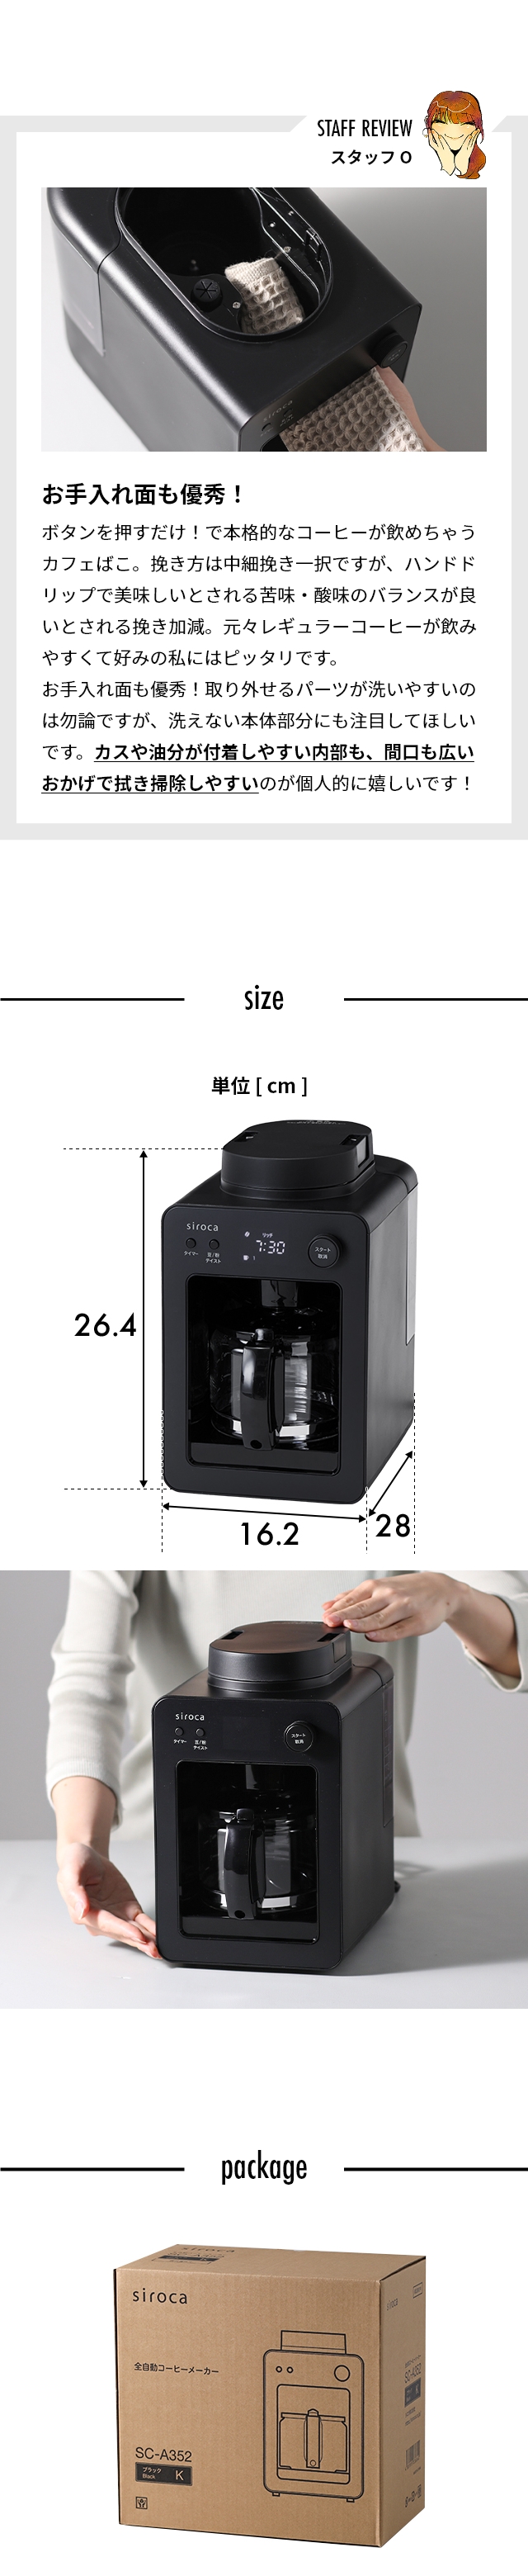 siroca (シロカ) 全自動コーヒーメーカー カフェばこ SC-A352